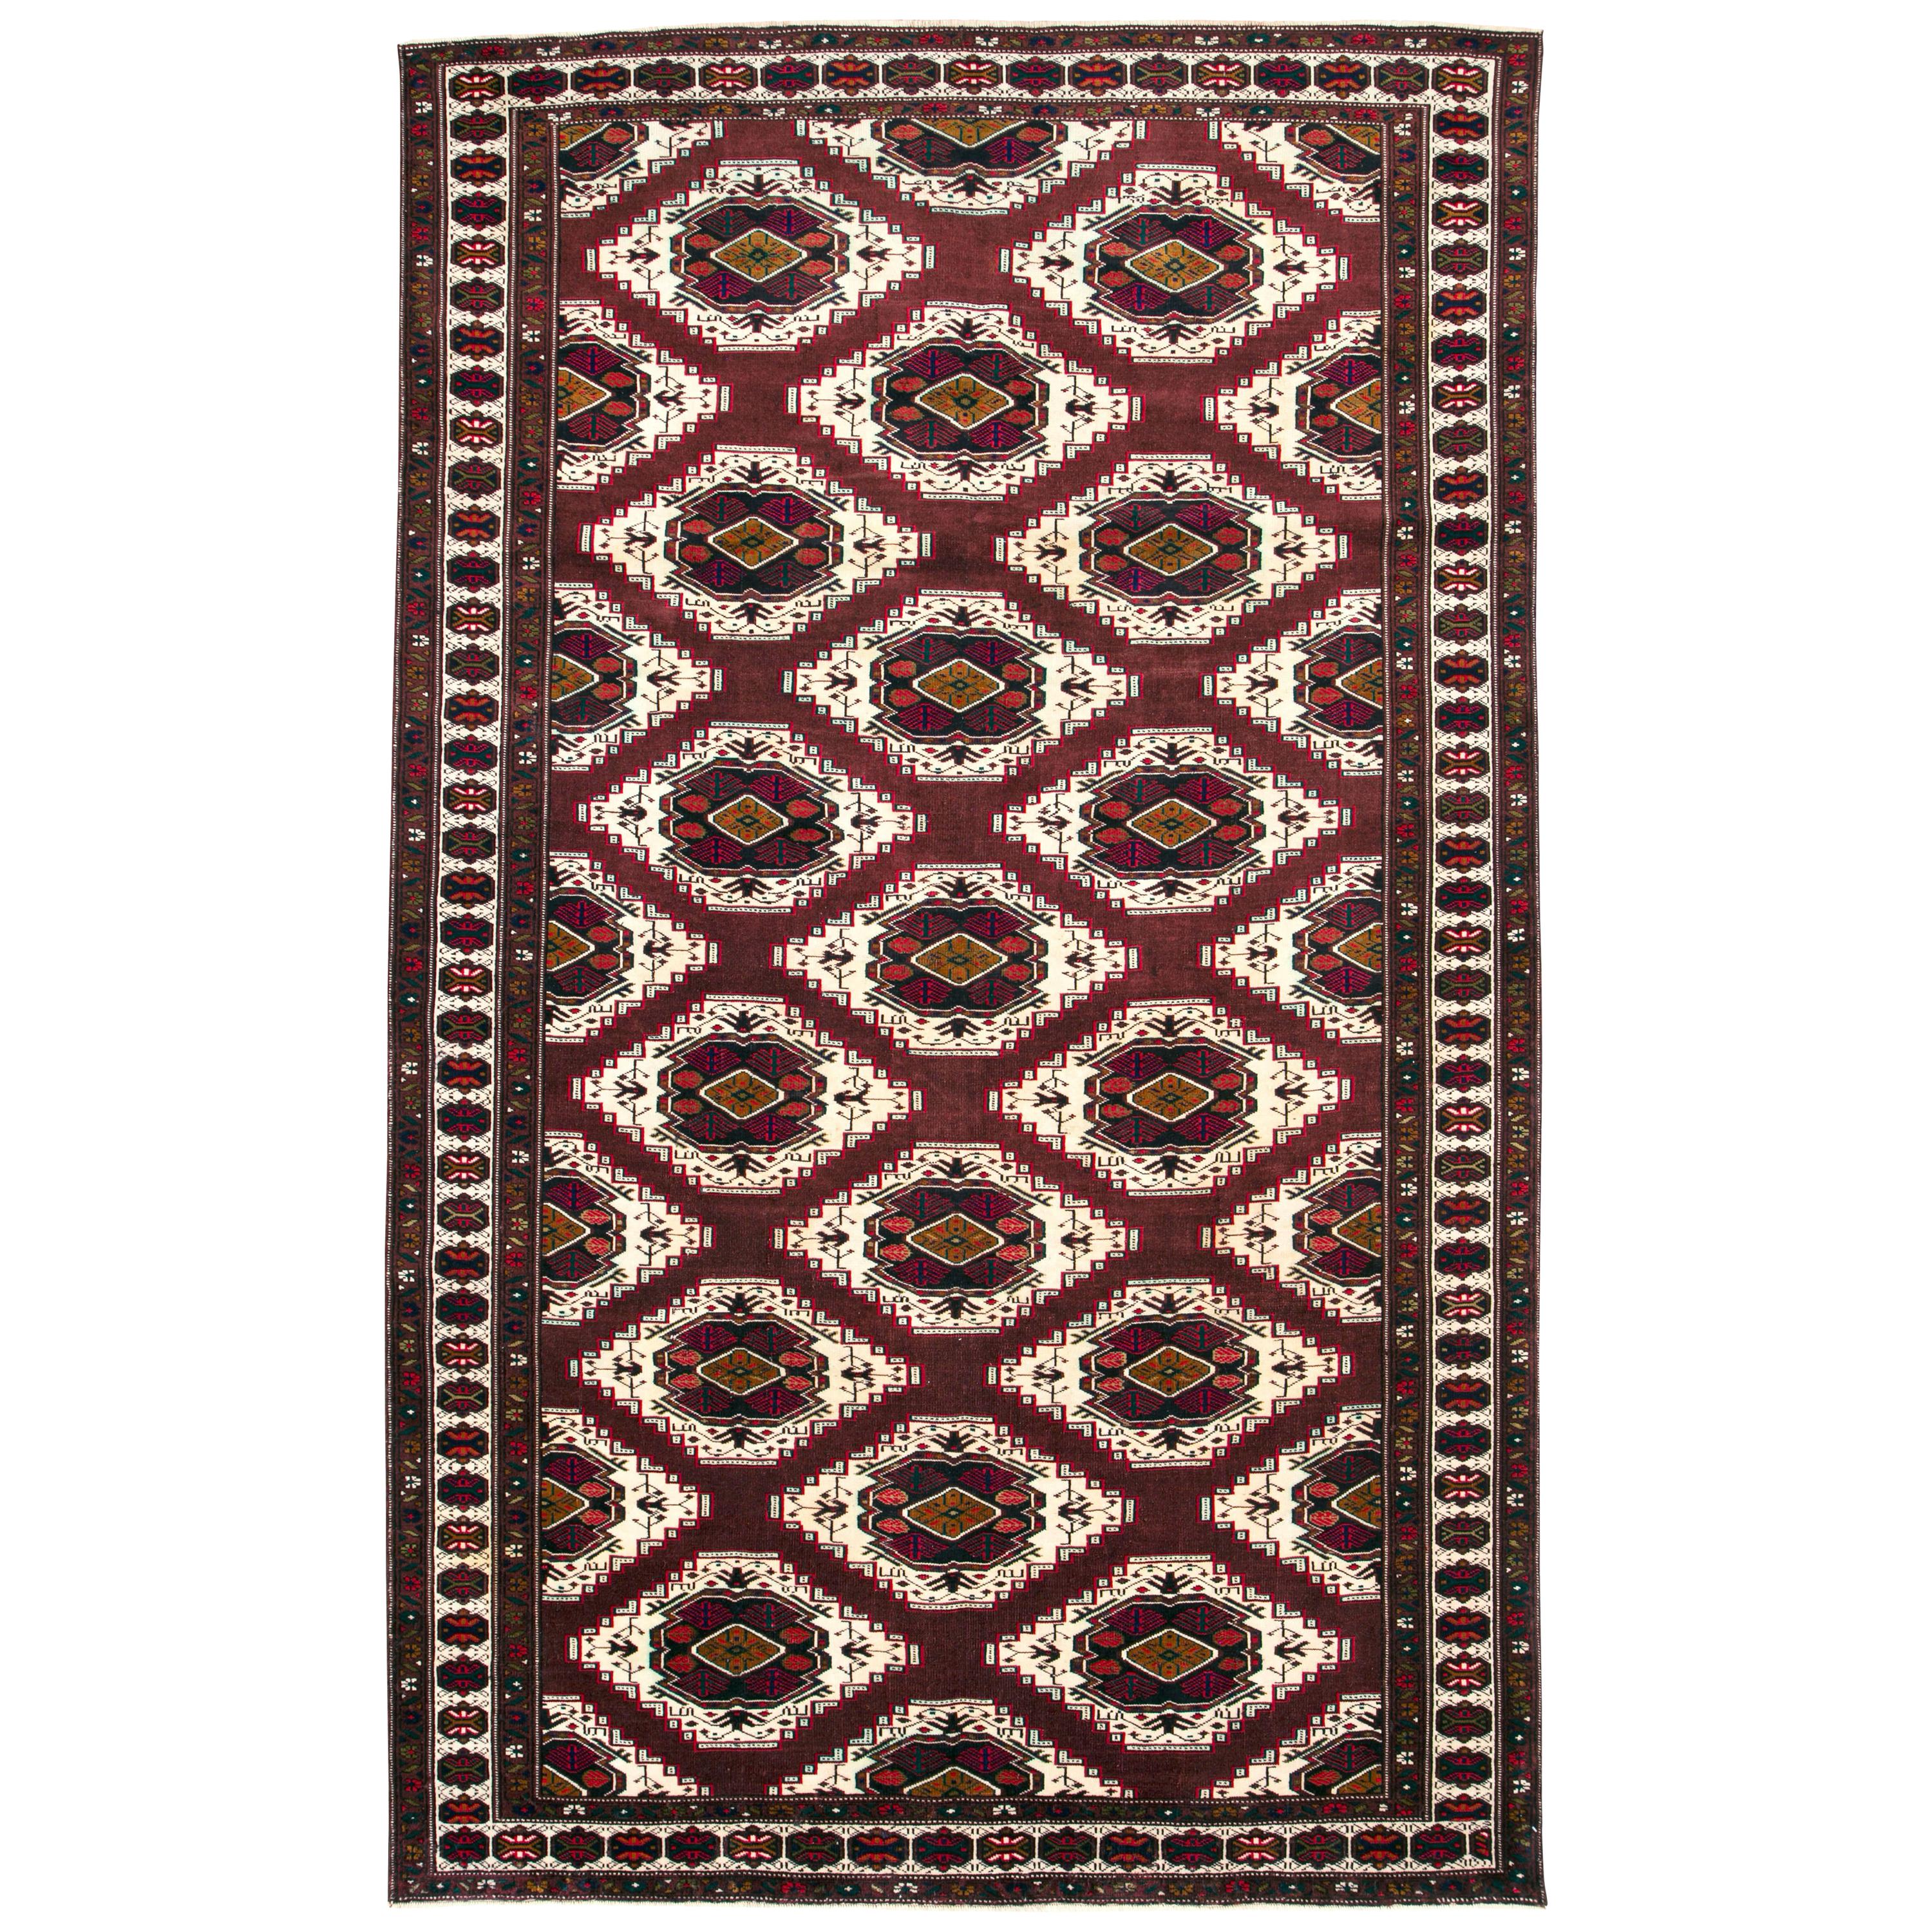 Zentralasiatischer türkischer Teppich im Vintage-Stil